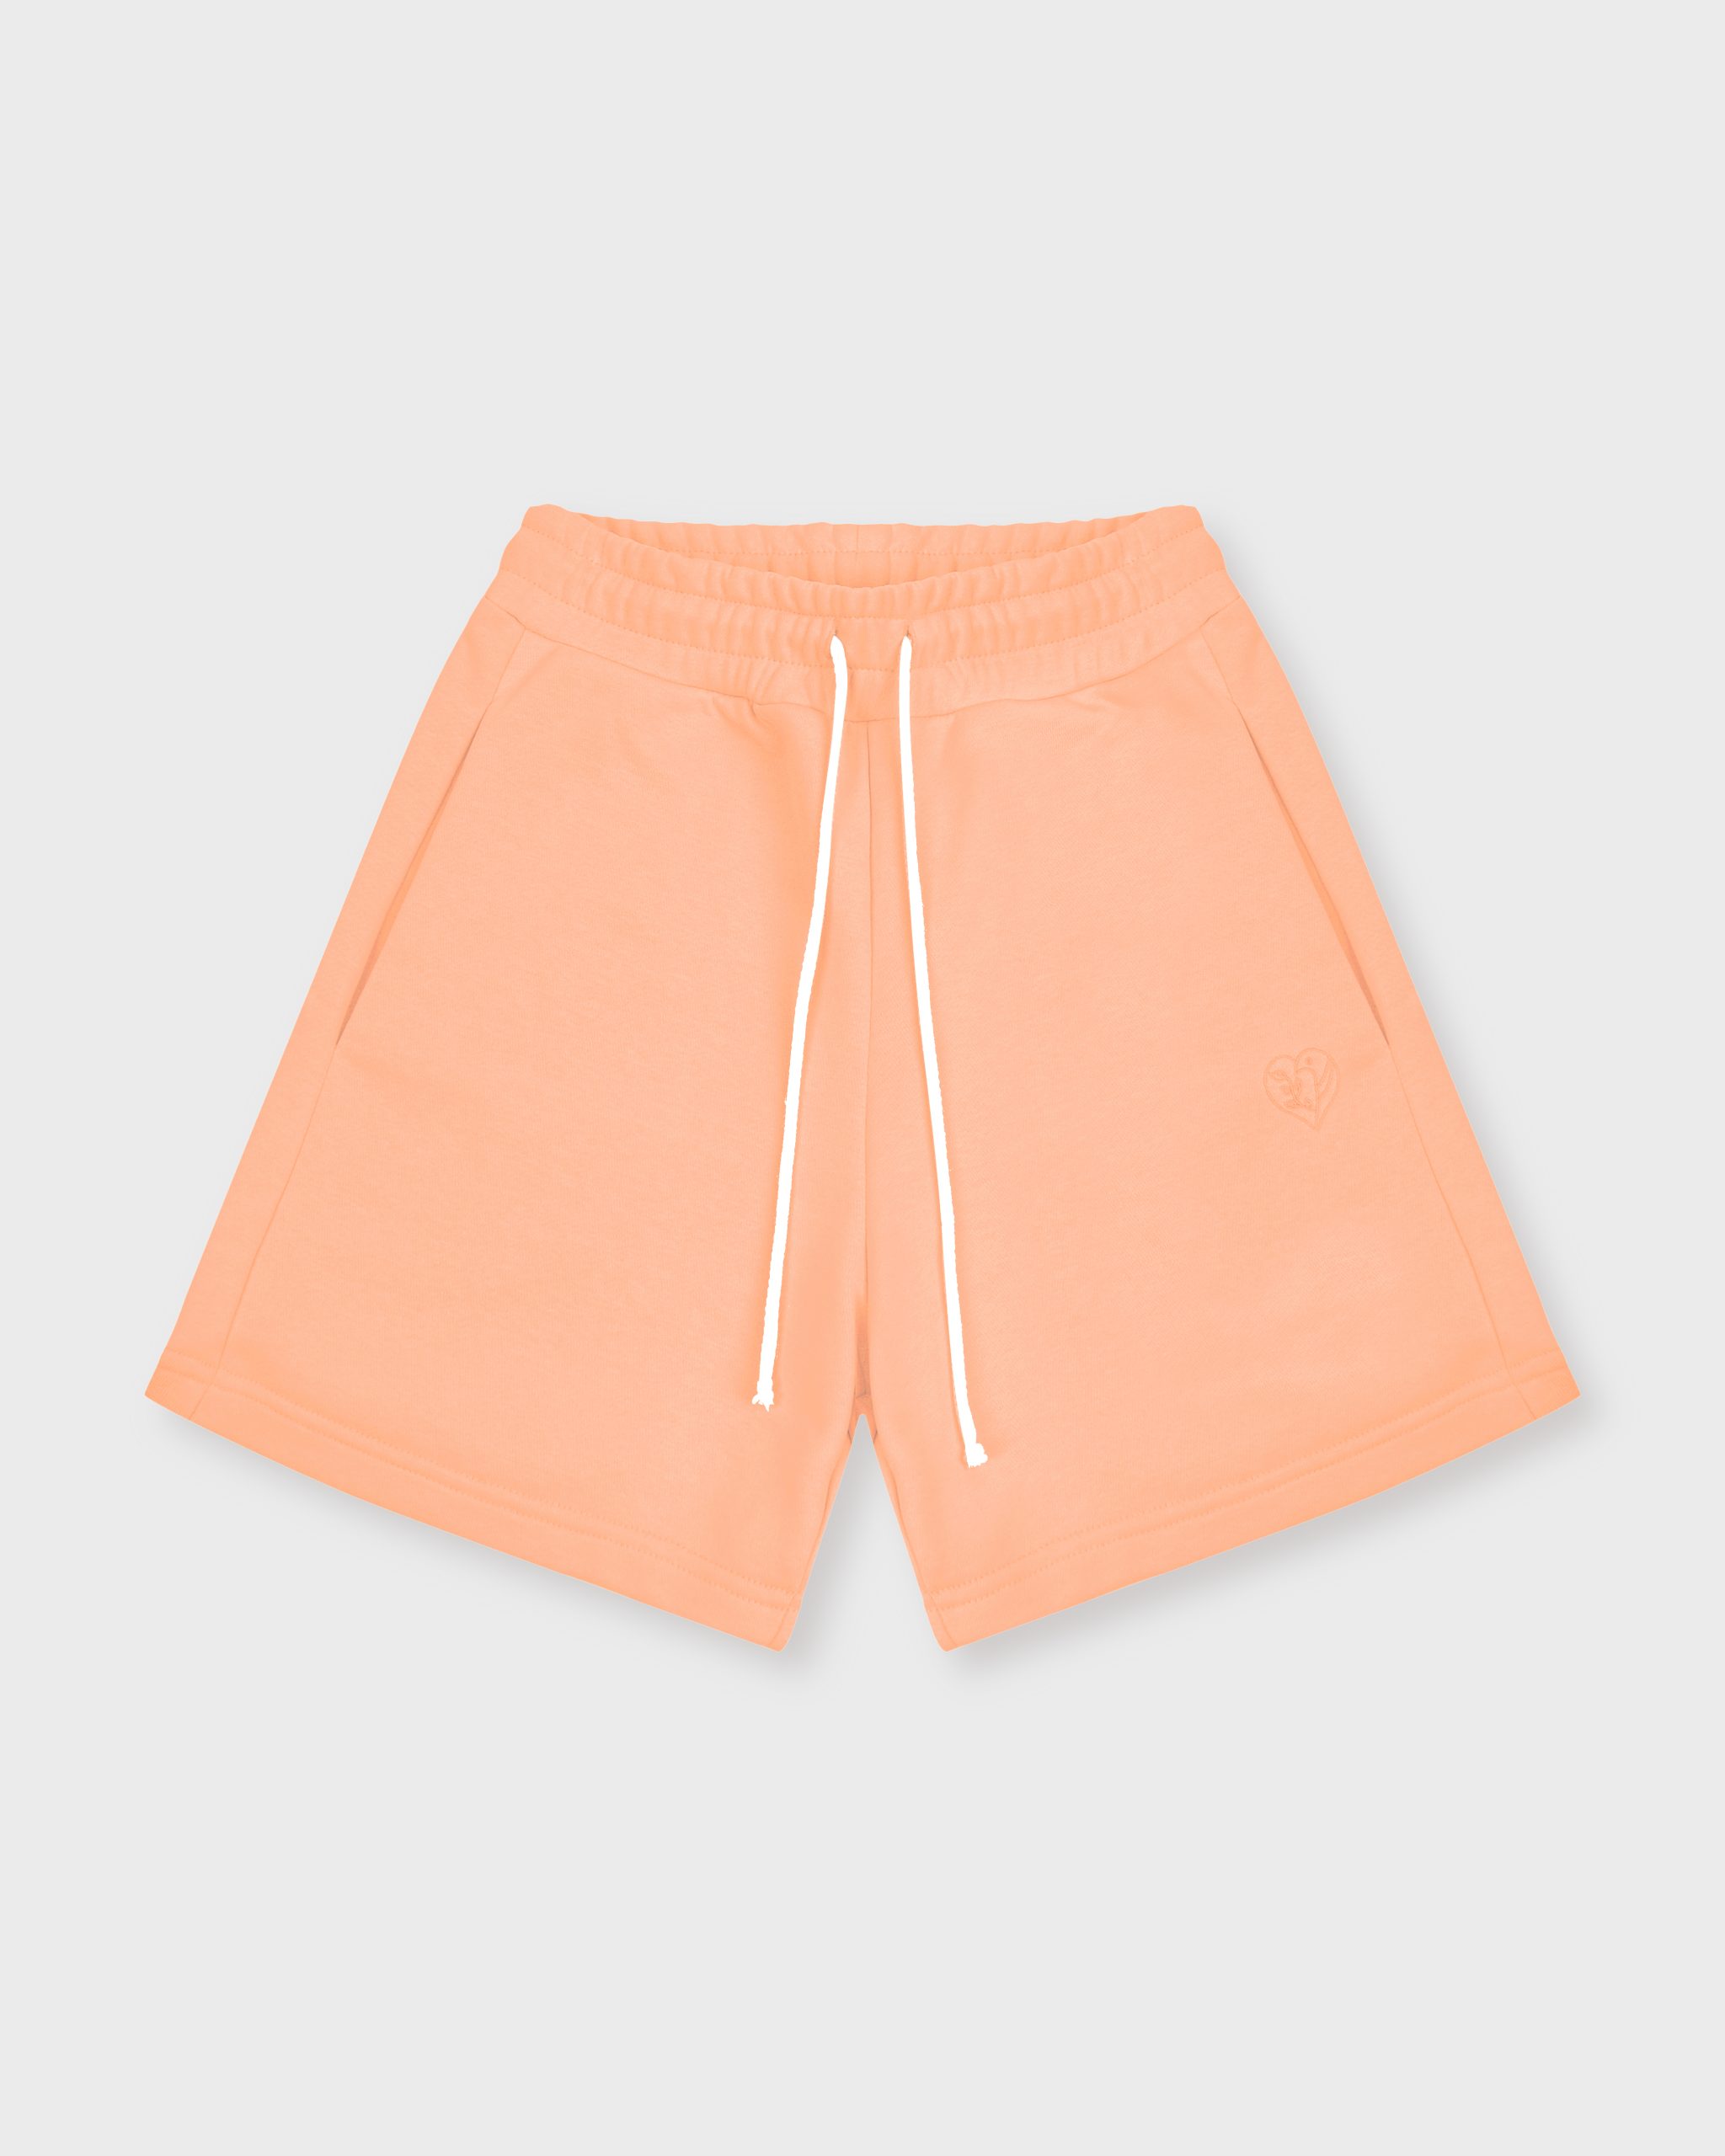 Повседневные шорты женские Atmosphere Summer vibes оранжевые S